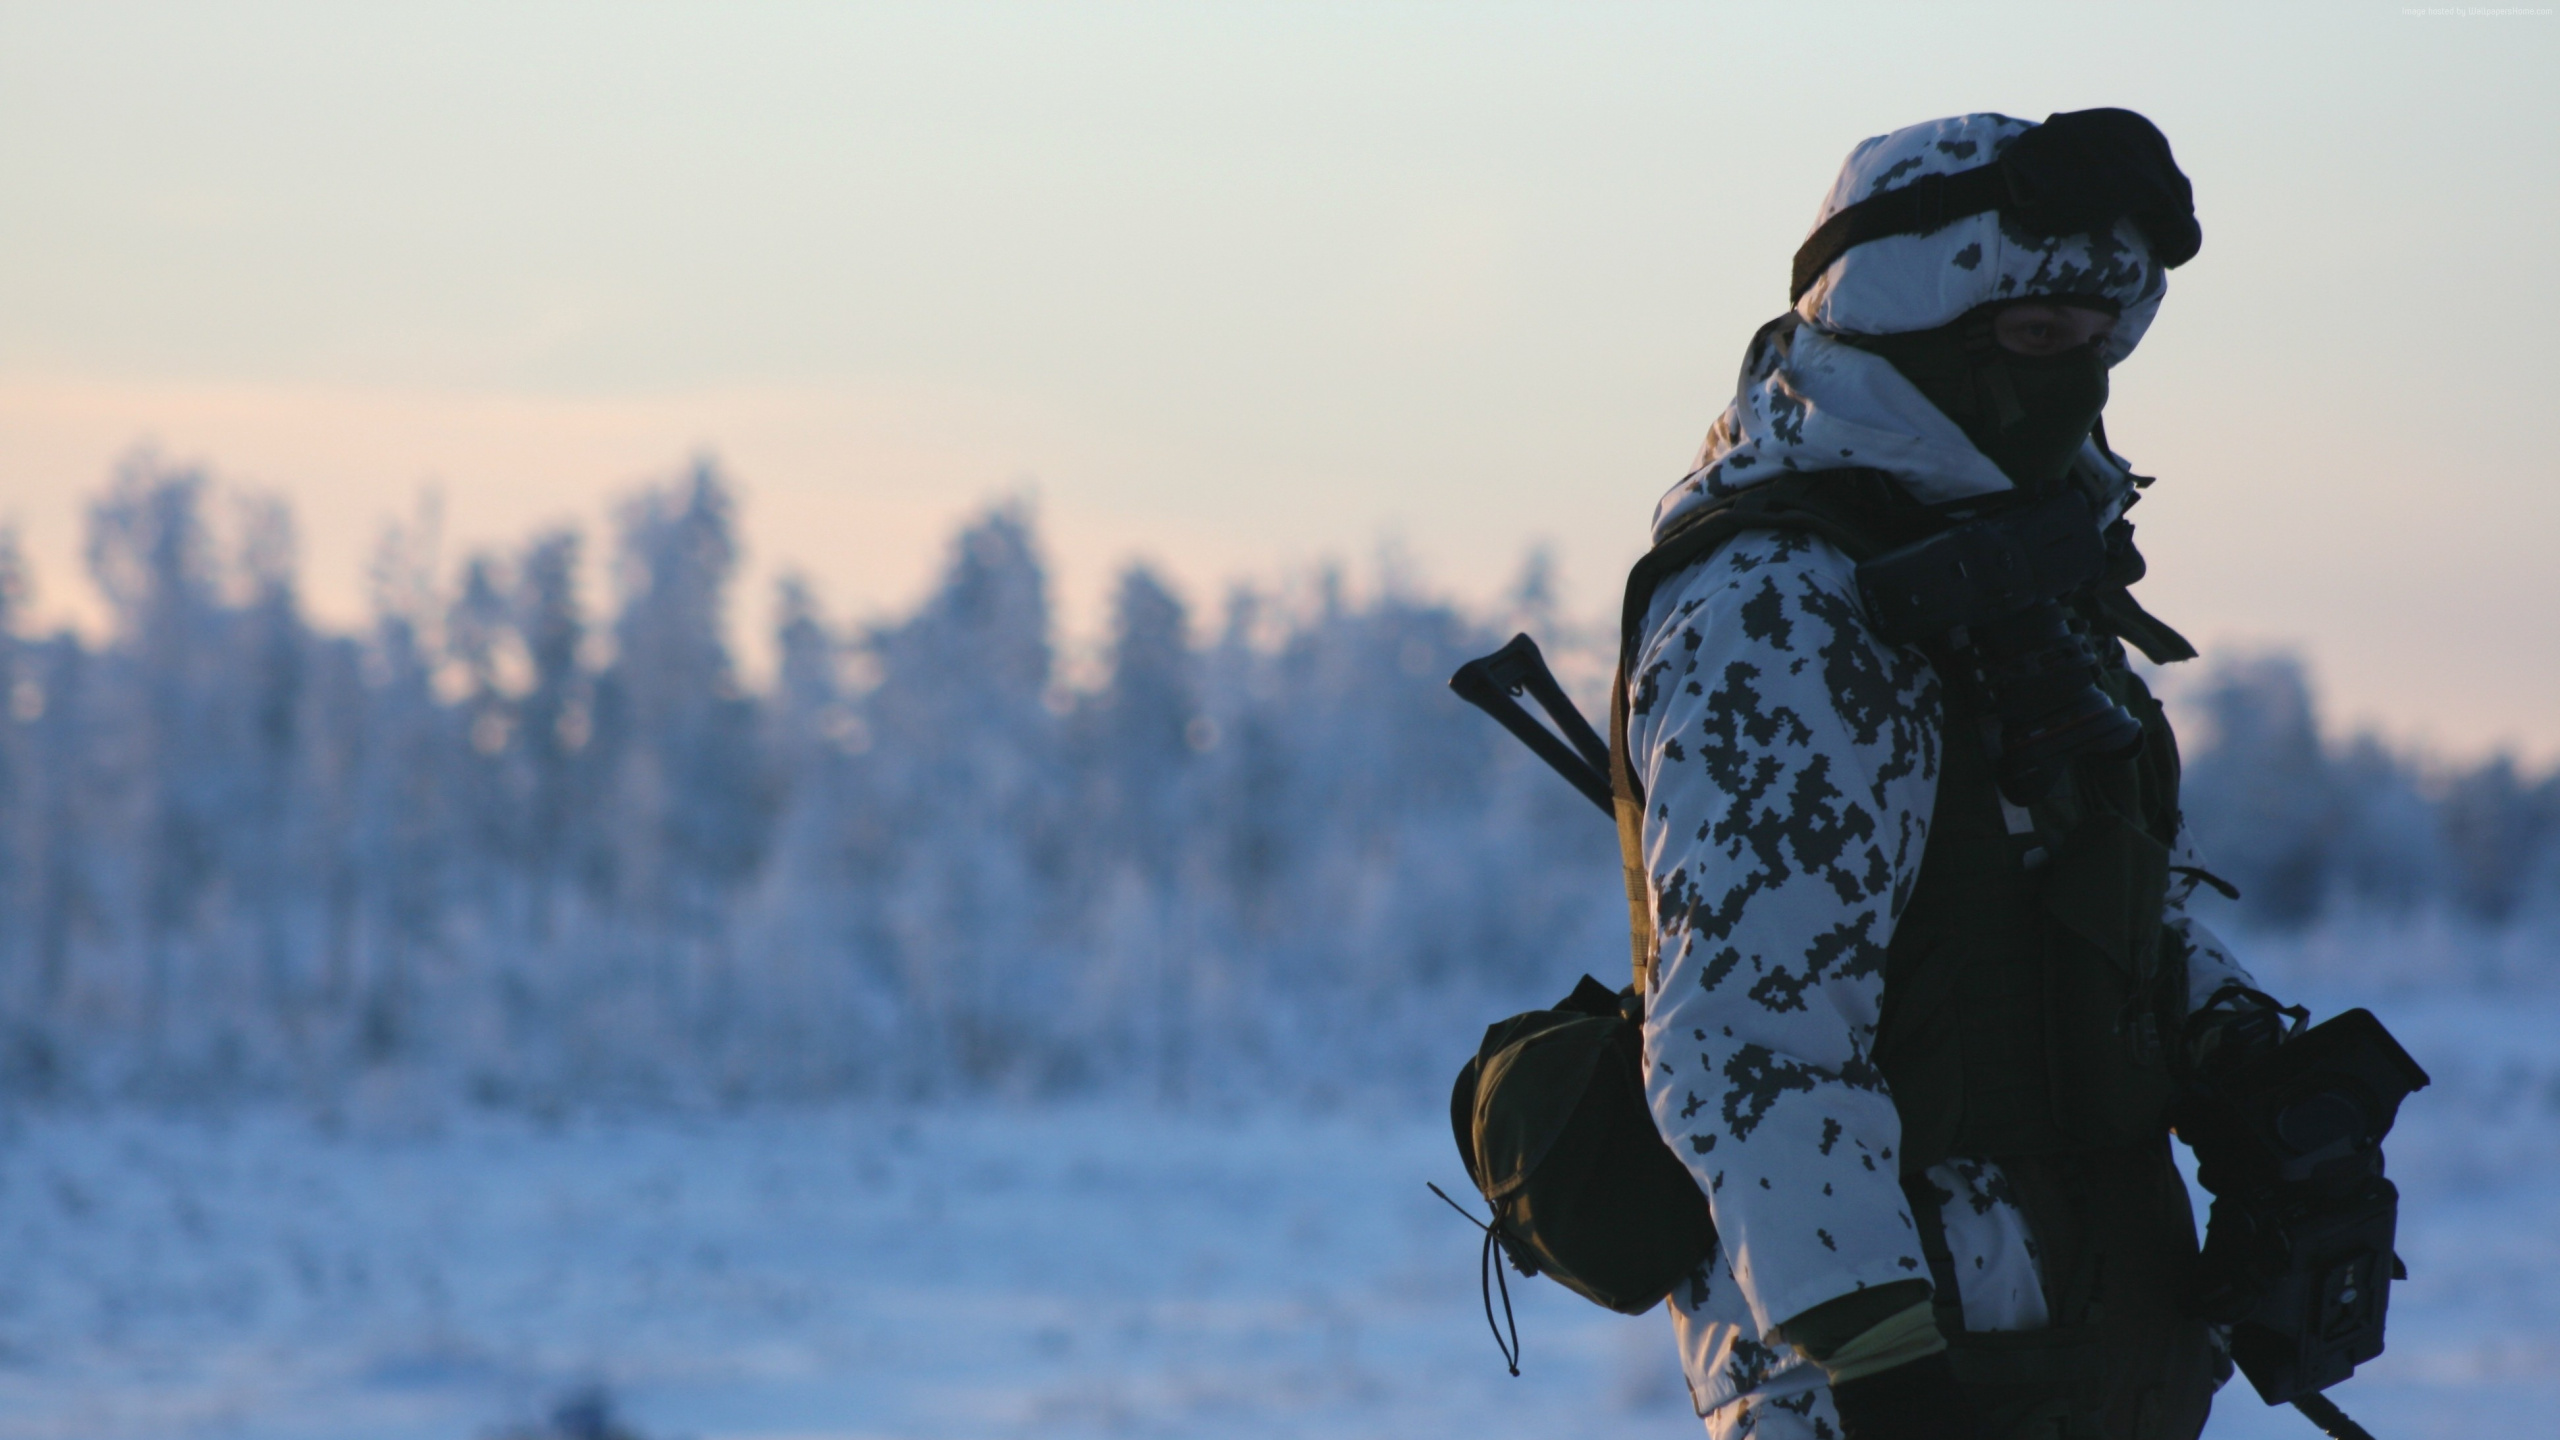 Soldat, Schnee, Winter, Einfrieren, Arktis. Wallpaper in 2560x1440 Resolution